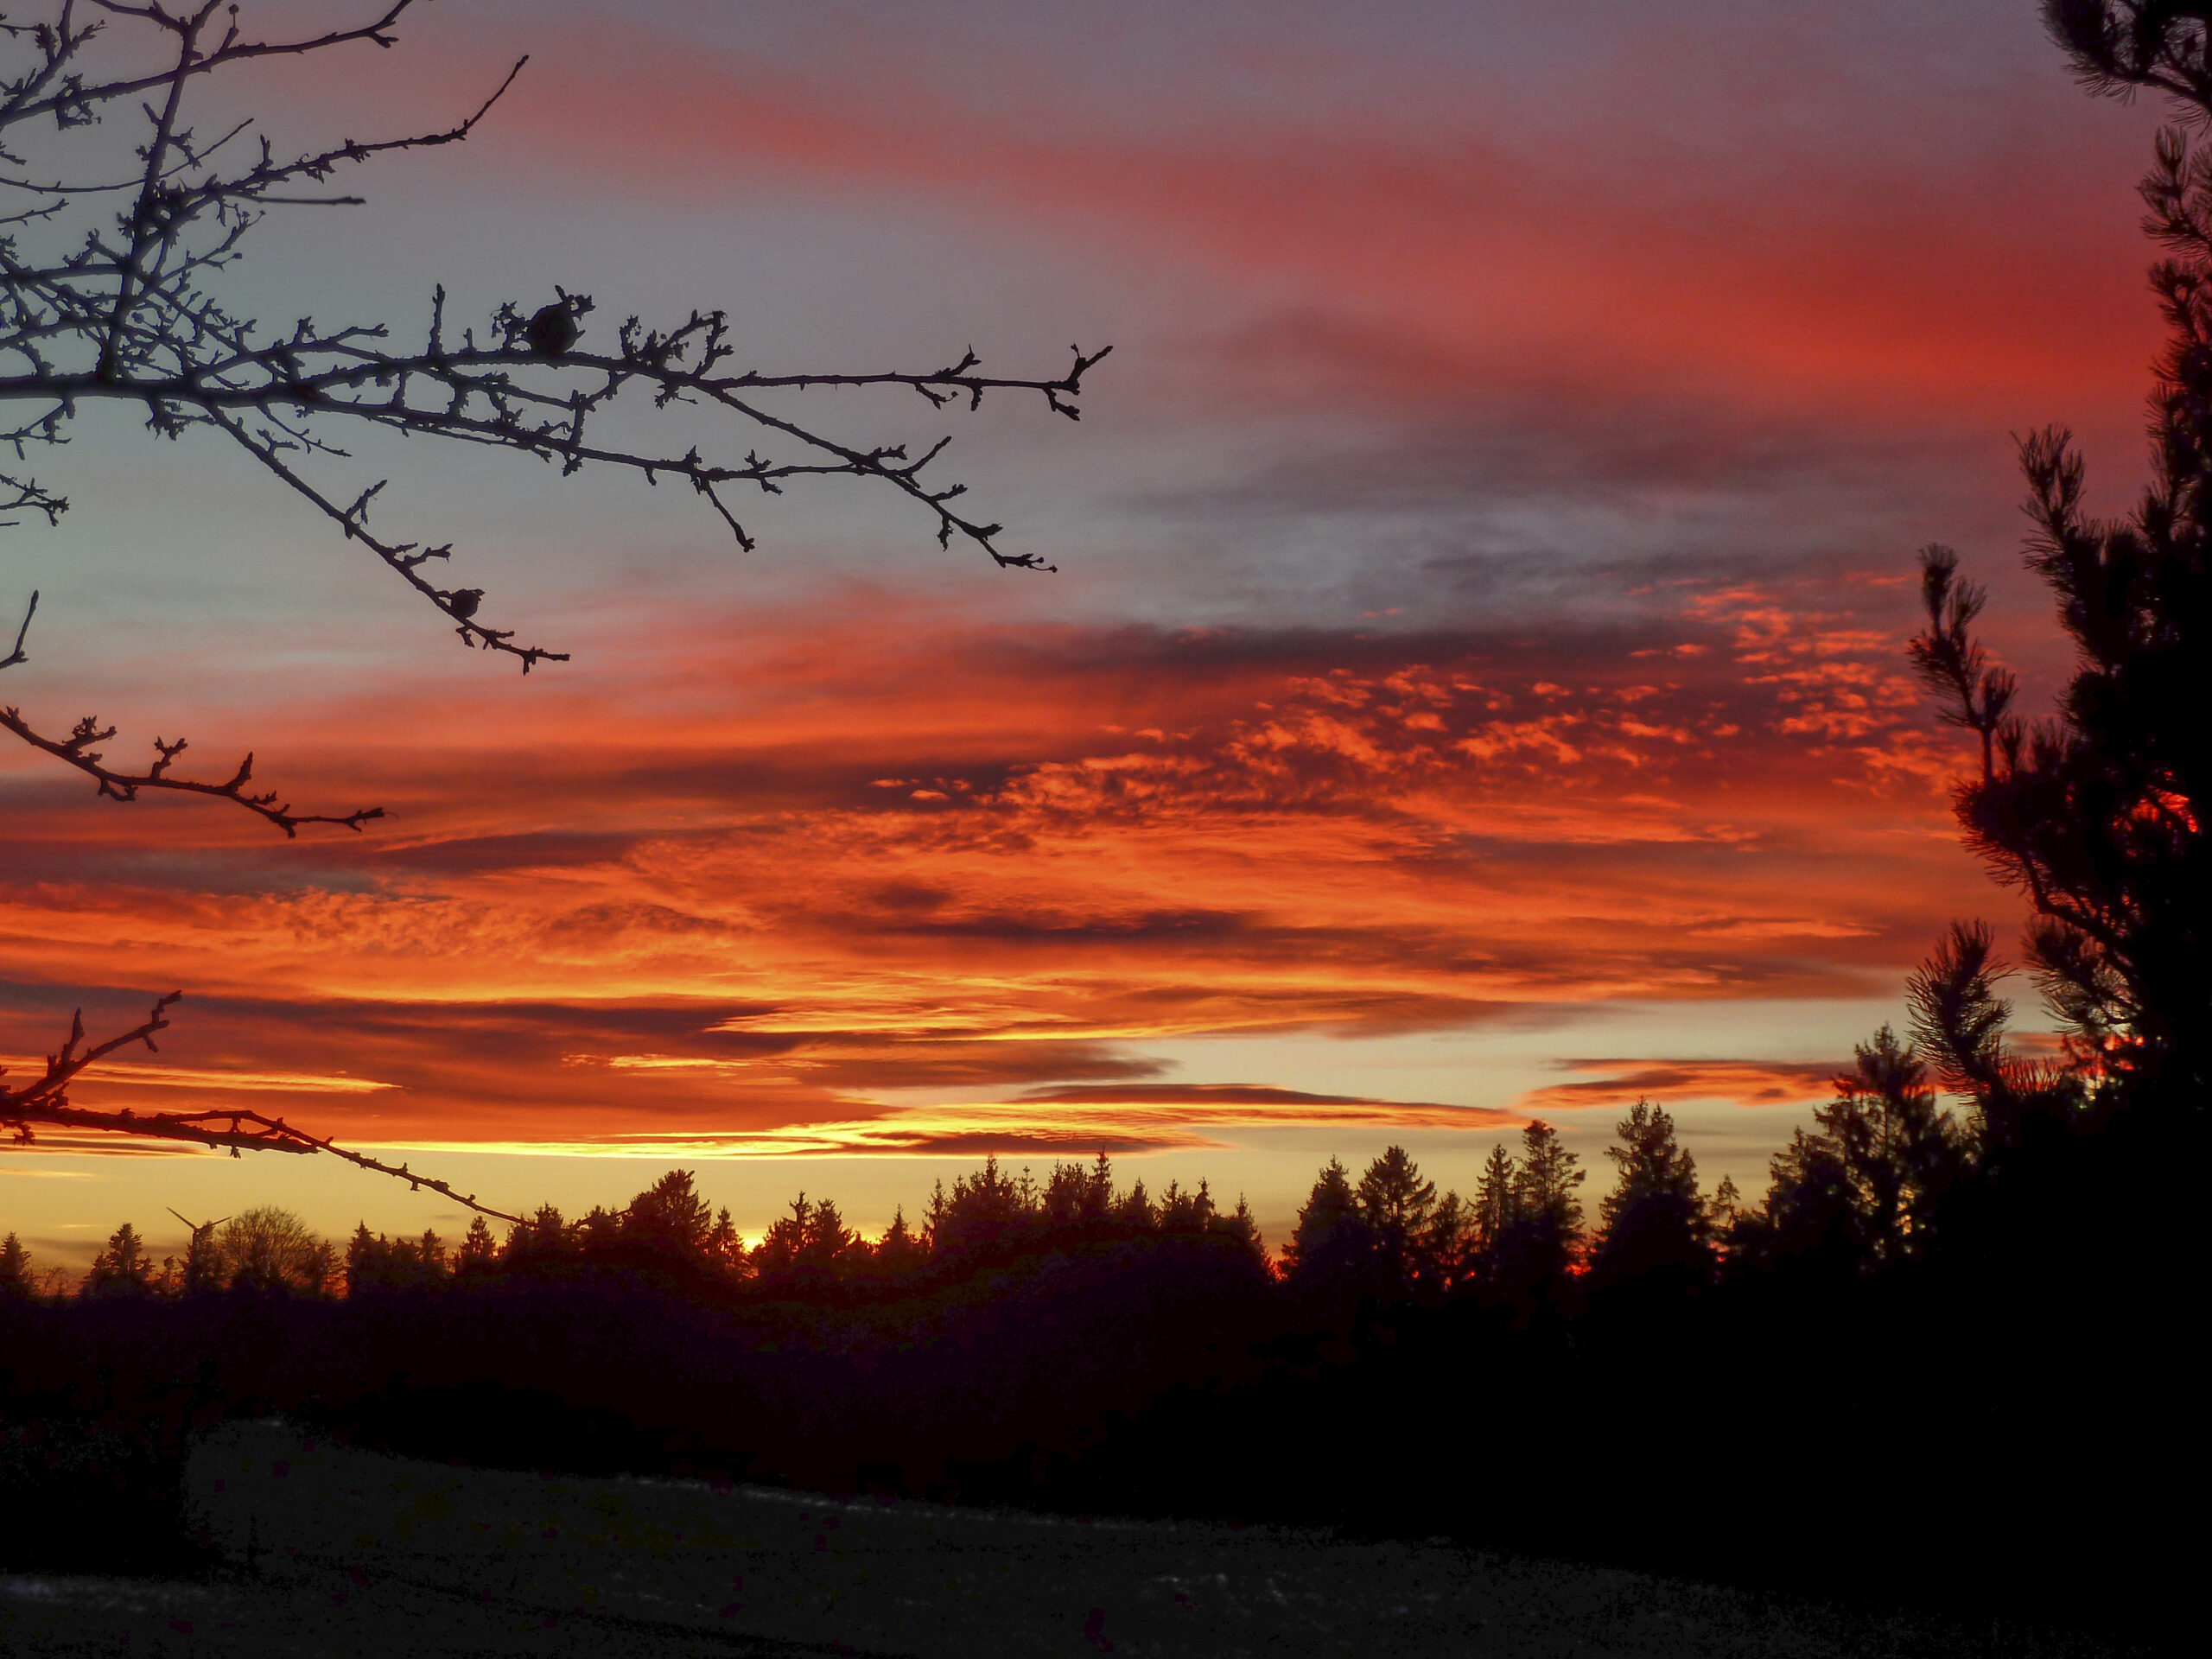 Leicht bewölkter rot-orangener Sonnenuntergang mit Nadelbäumen unterhalb des Himmels und einer Wiese vor den Bäumen